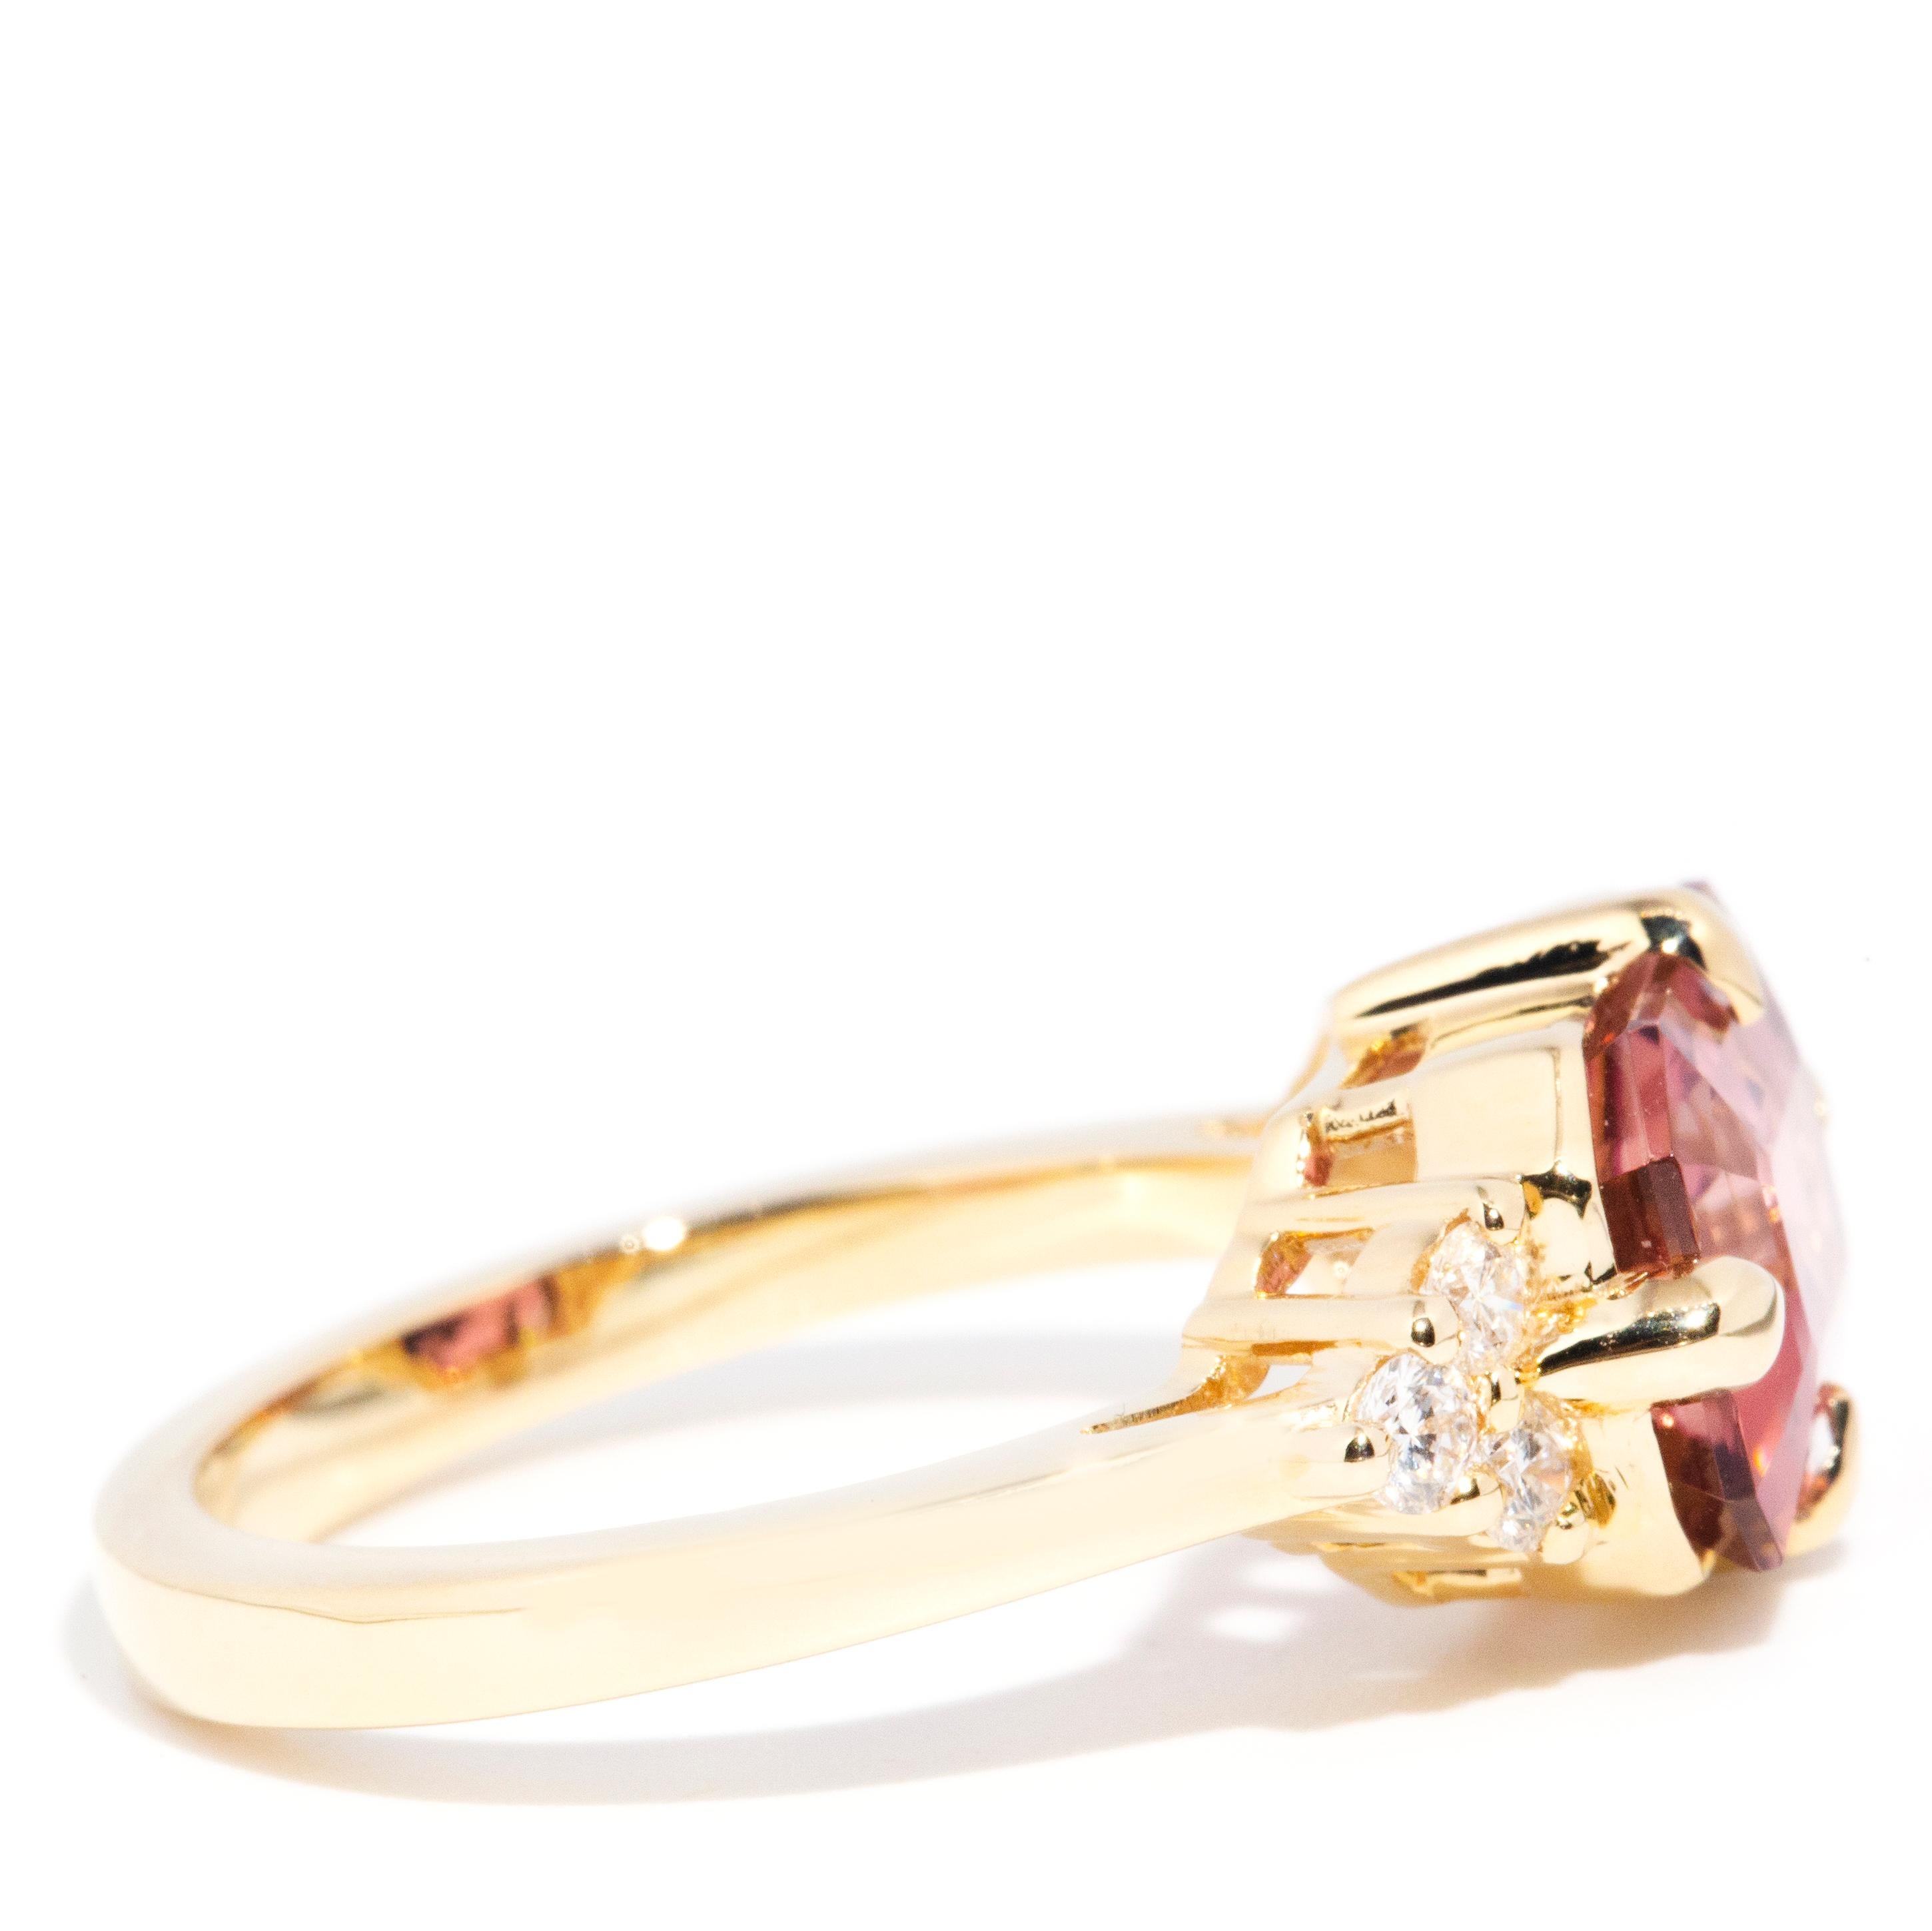 4.09 Carat Pink Tourmaline and Diamond Contemporary 18 Carat Yellow Gold Ring 1